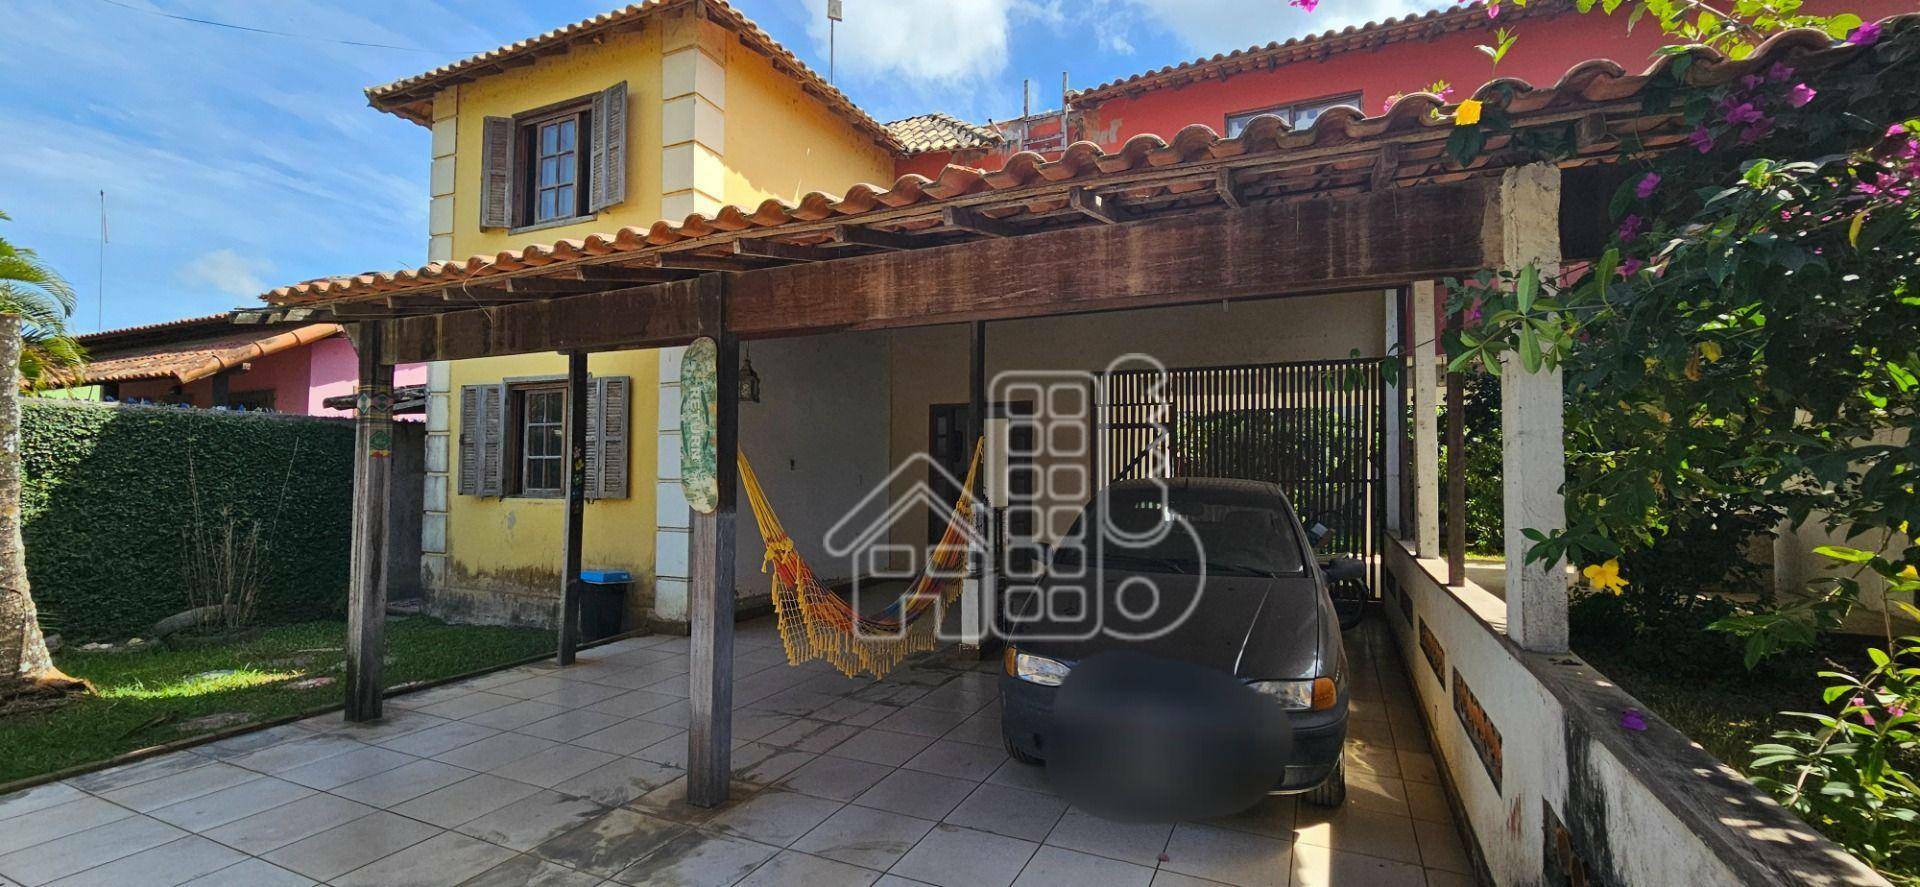 Casa com 3 dormitórios à venda, 120 m² por R$ 500.000,00 - Jardim Atlântico Oeste (Itaipuaçu) - Maricá/RJ